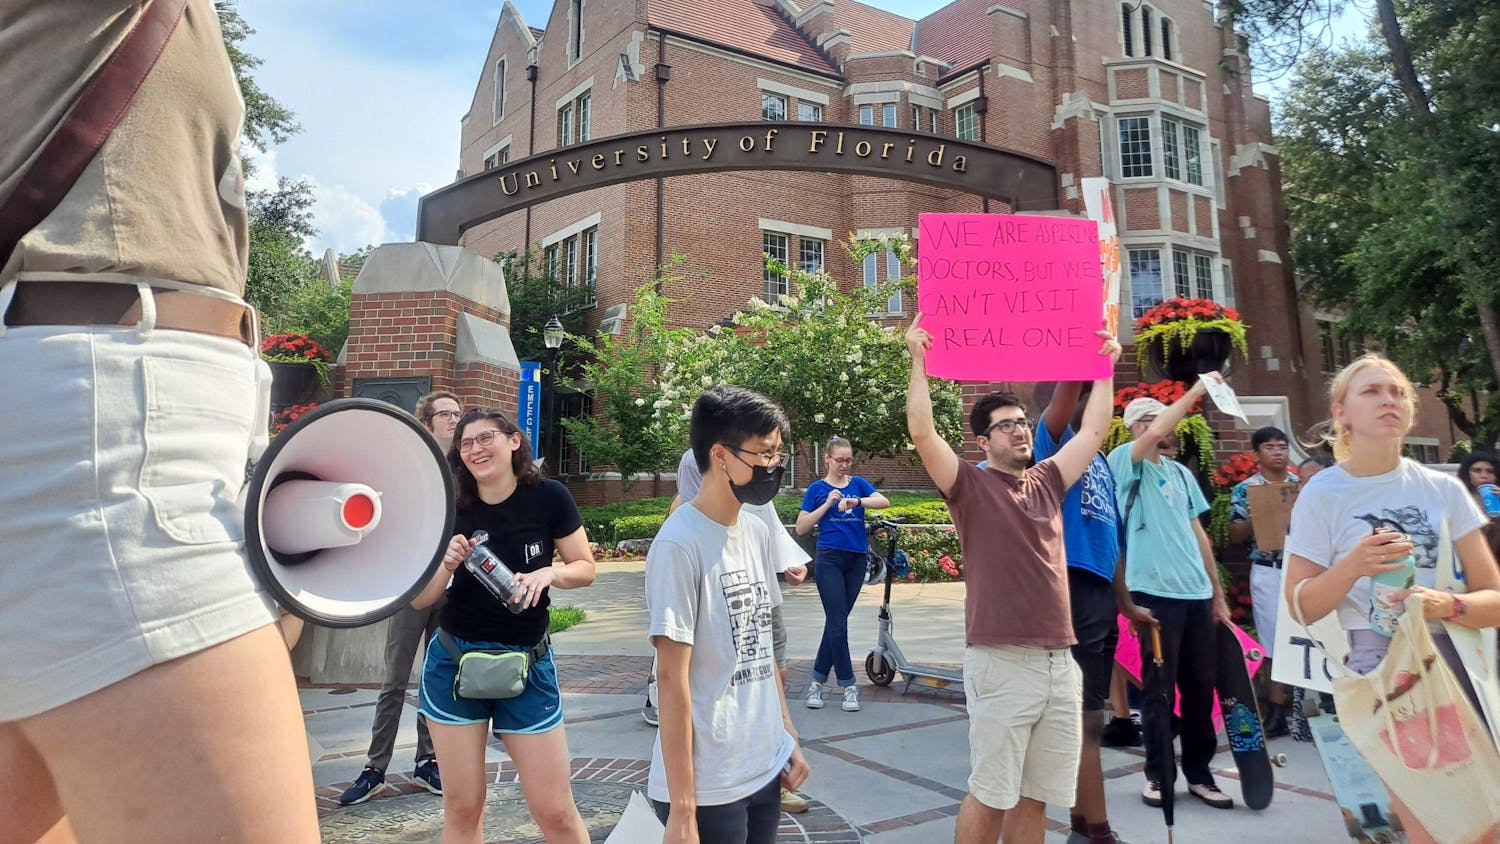 Alrededor de 50 asistentes graduados marcharon desde Reitz Union hasta Tiger Hall el martes en protesta por la propuesta de aumento salarial.